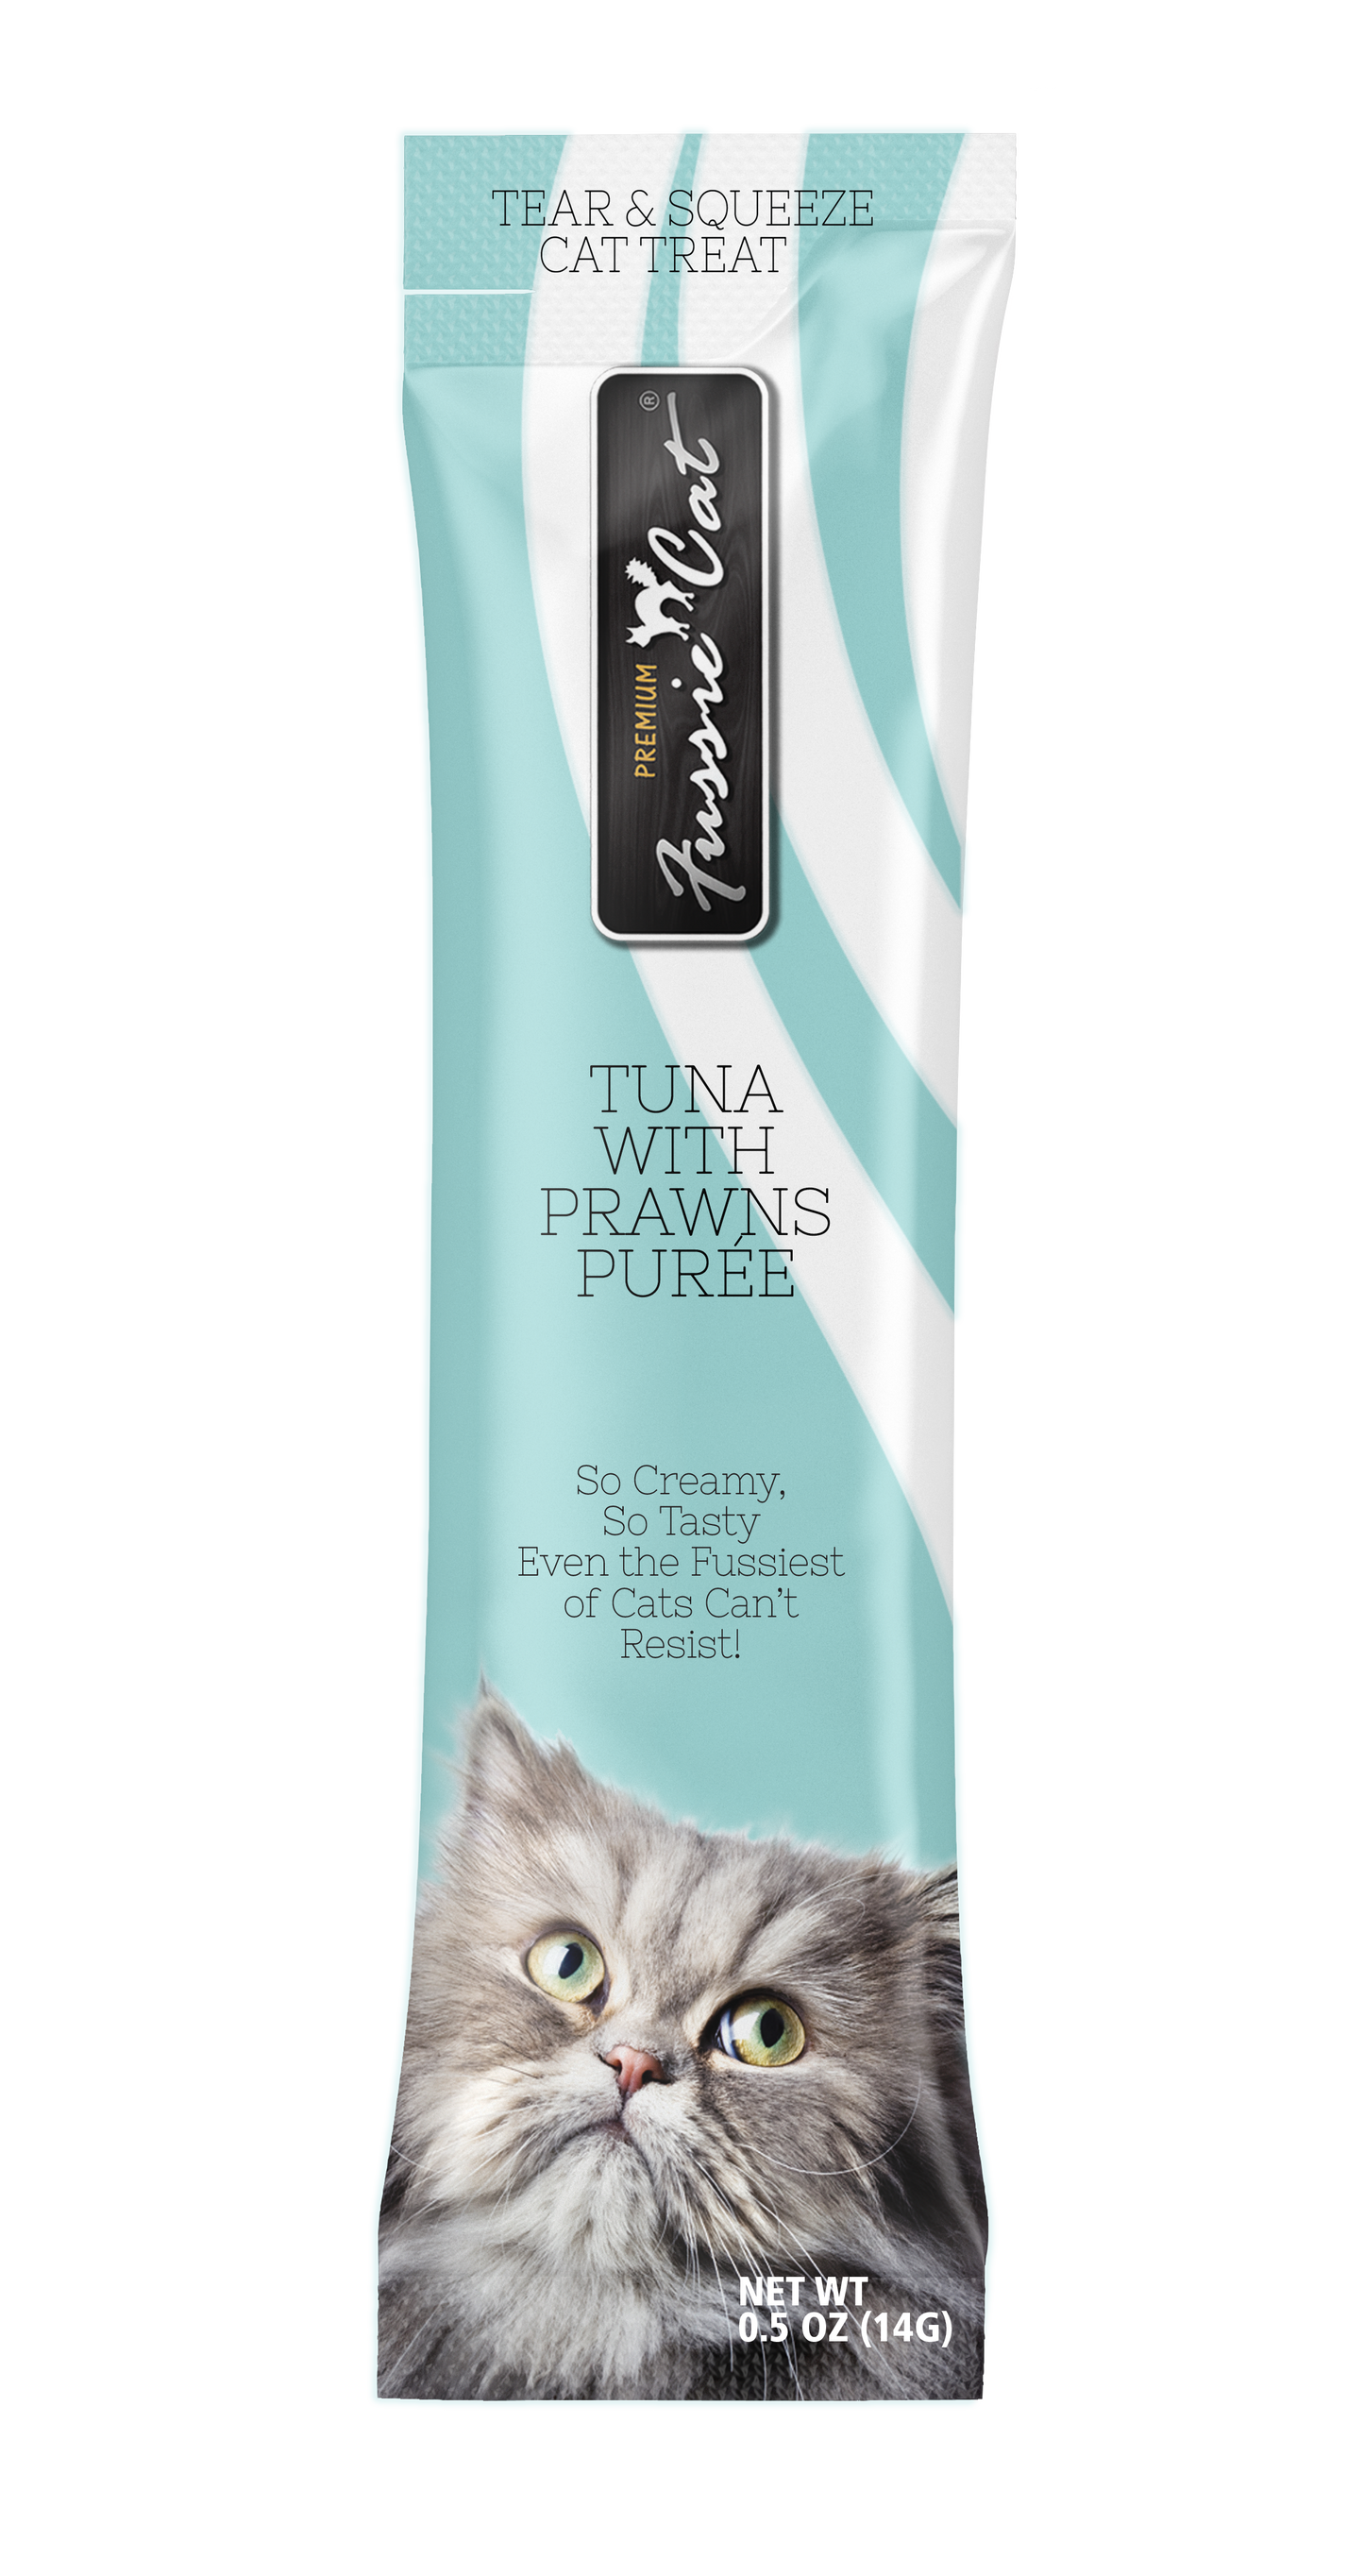 Fussie Cat Tuna With Prawns Purée 0.5-oz, 4-Pack, Cat Treat